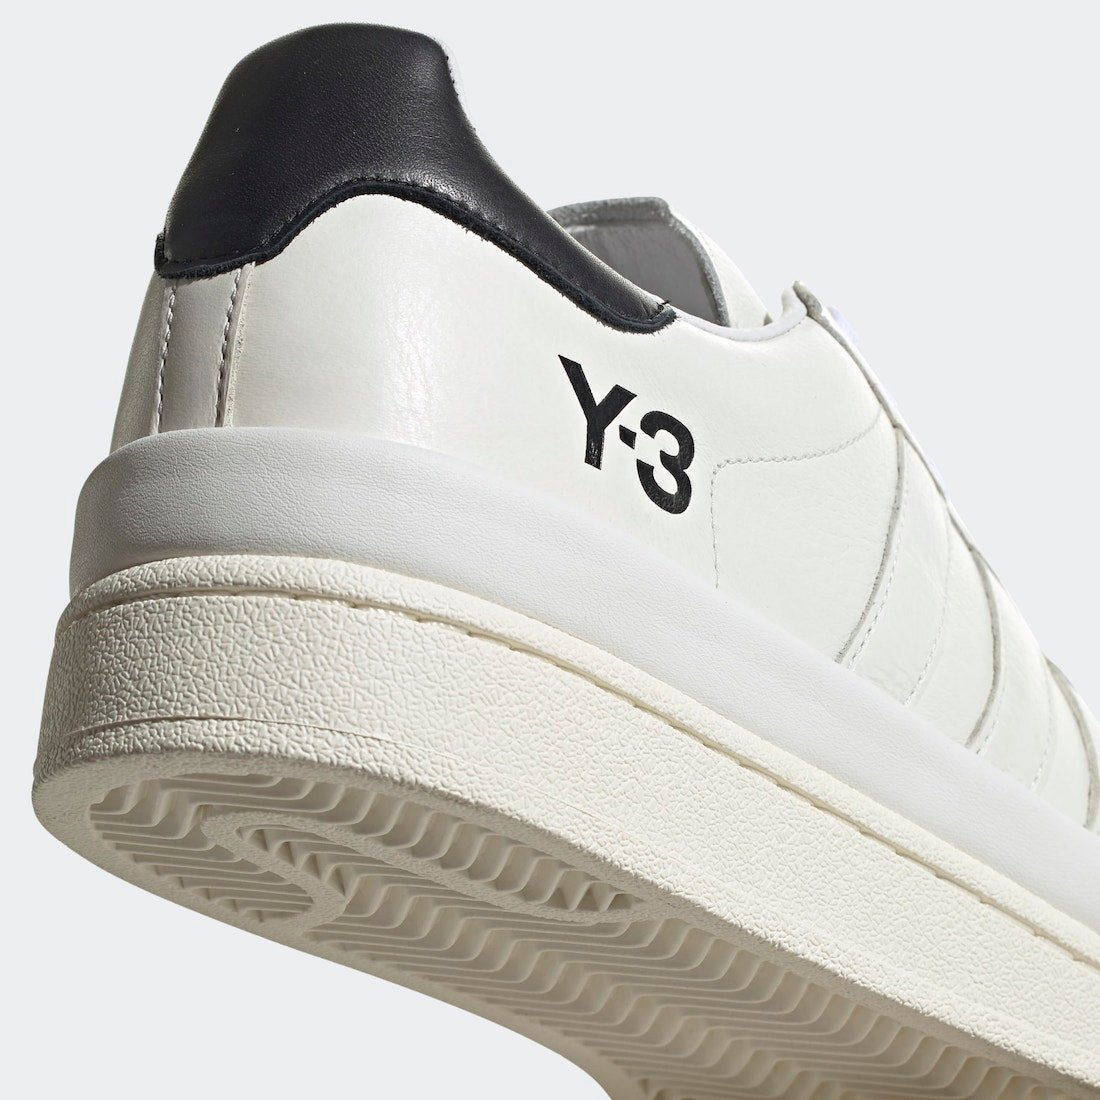 adidas Y-3 Hicho Core White S42846 Release Date Info